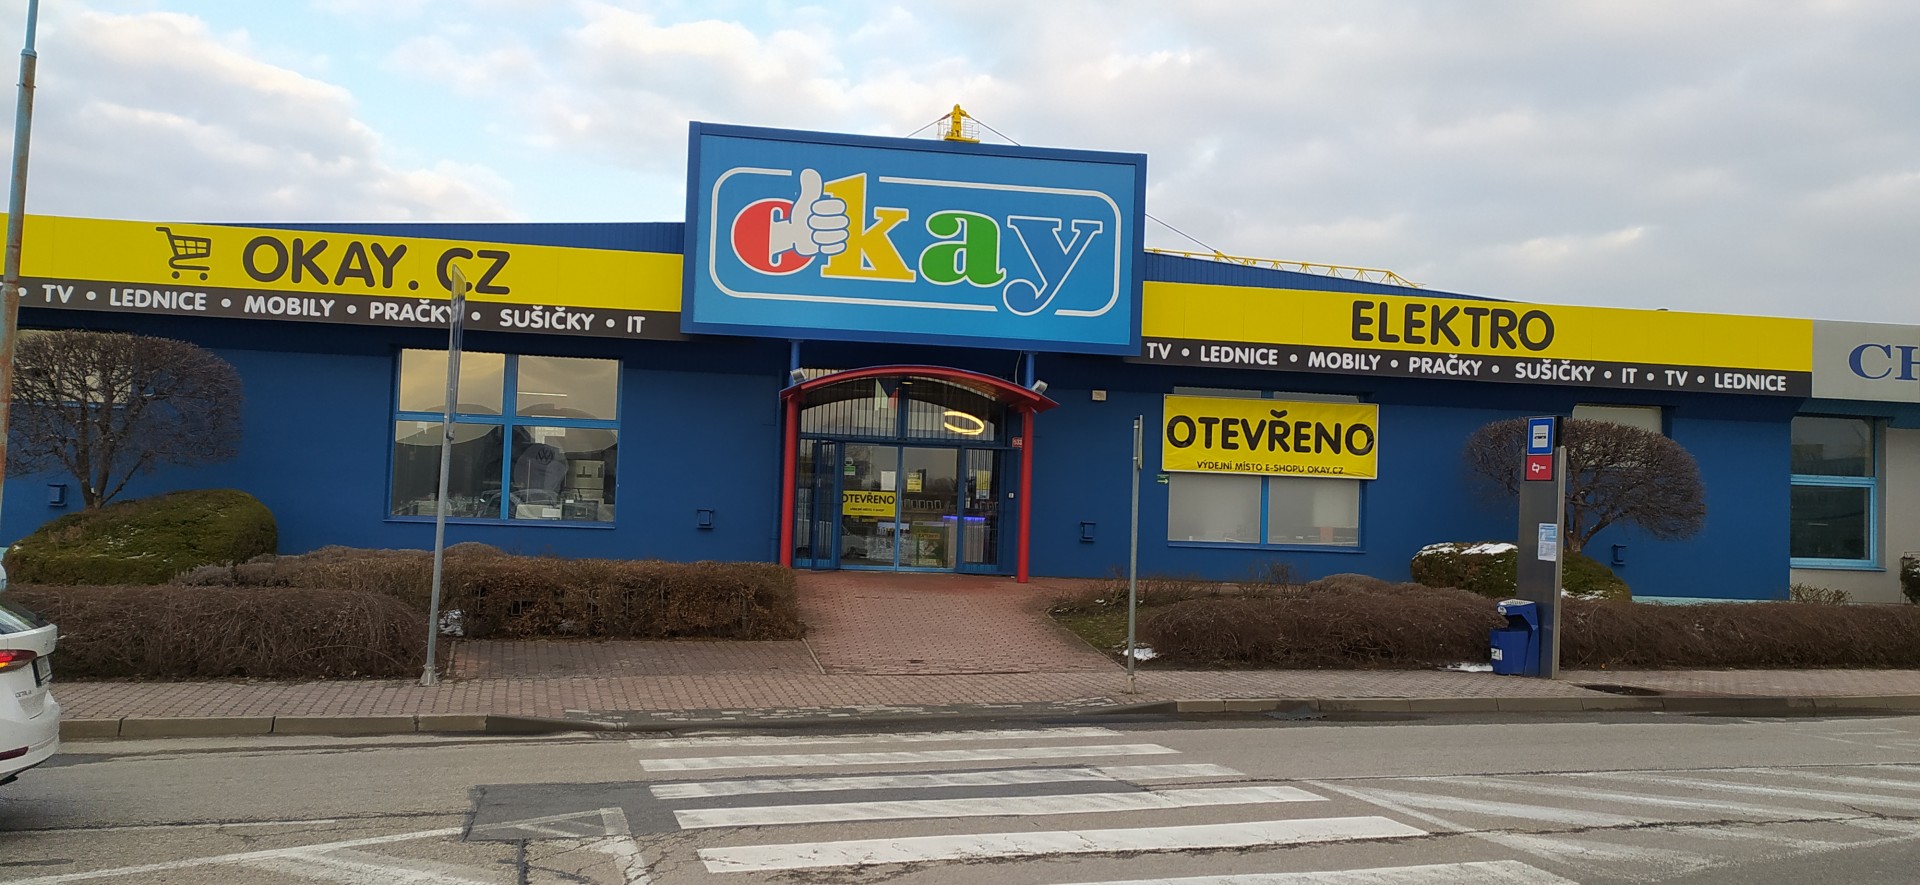 OKAY České Budějovice